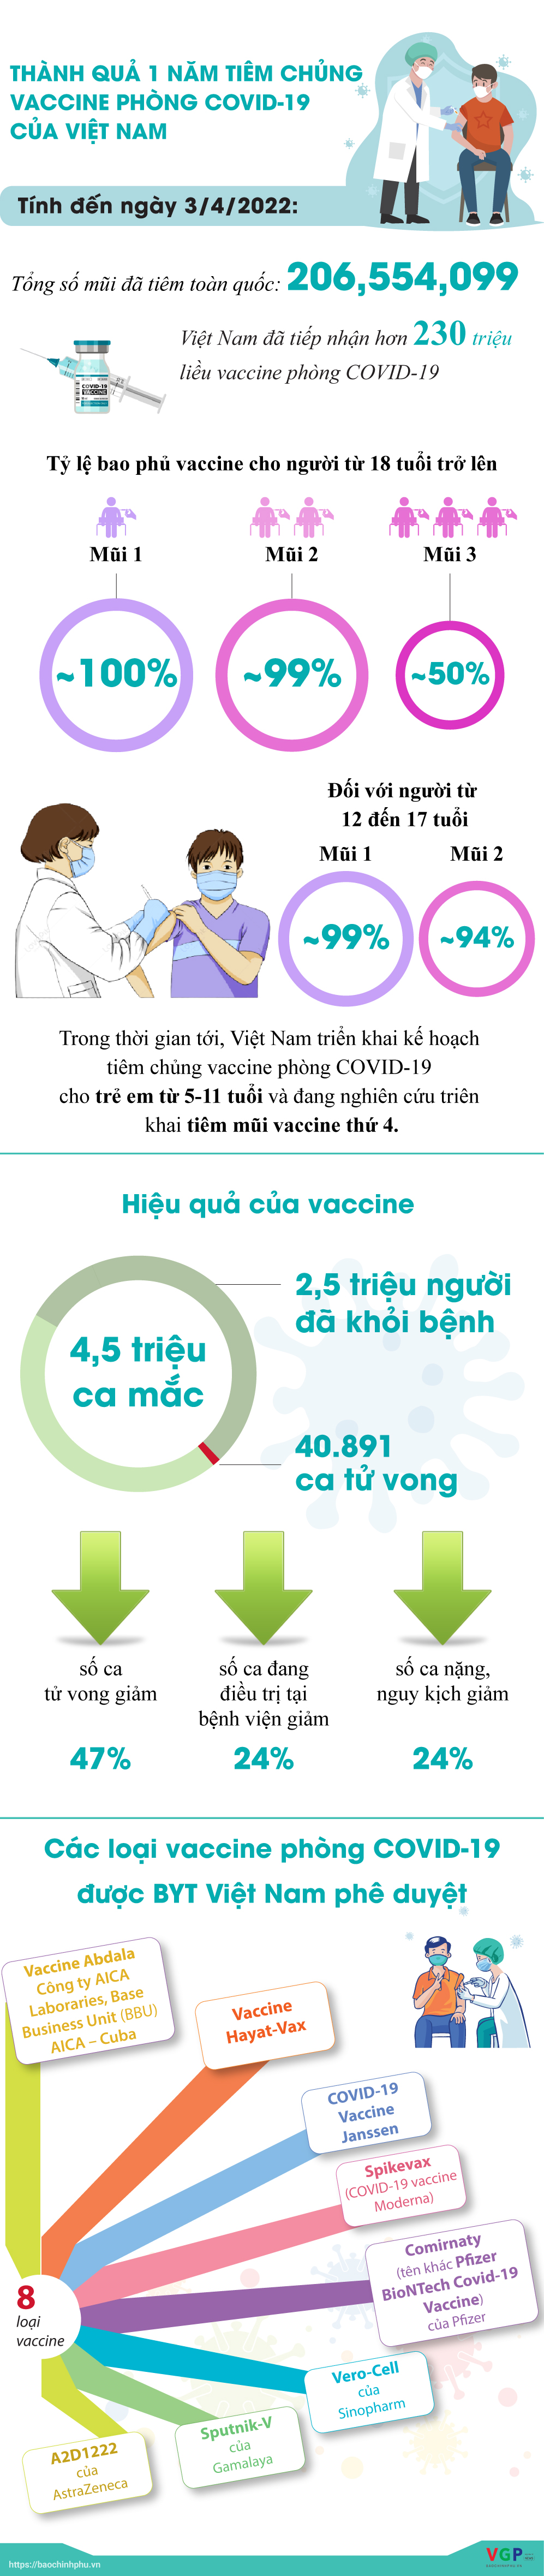 Chiến dịch tiêm vaccine thần tốc: Kết quả sau 1 năm - Ảnh 1.